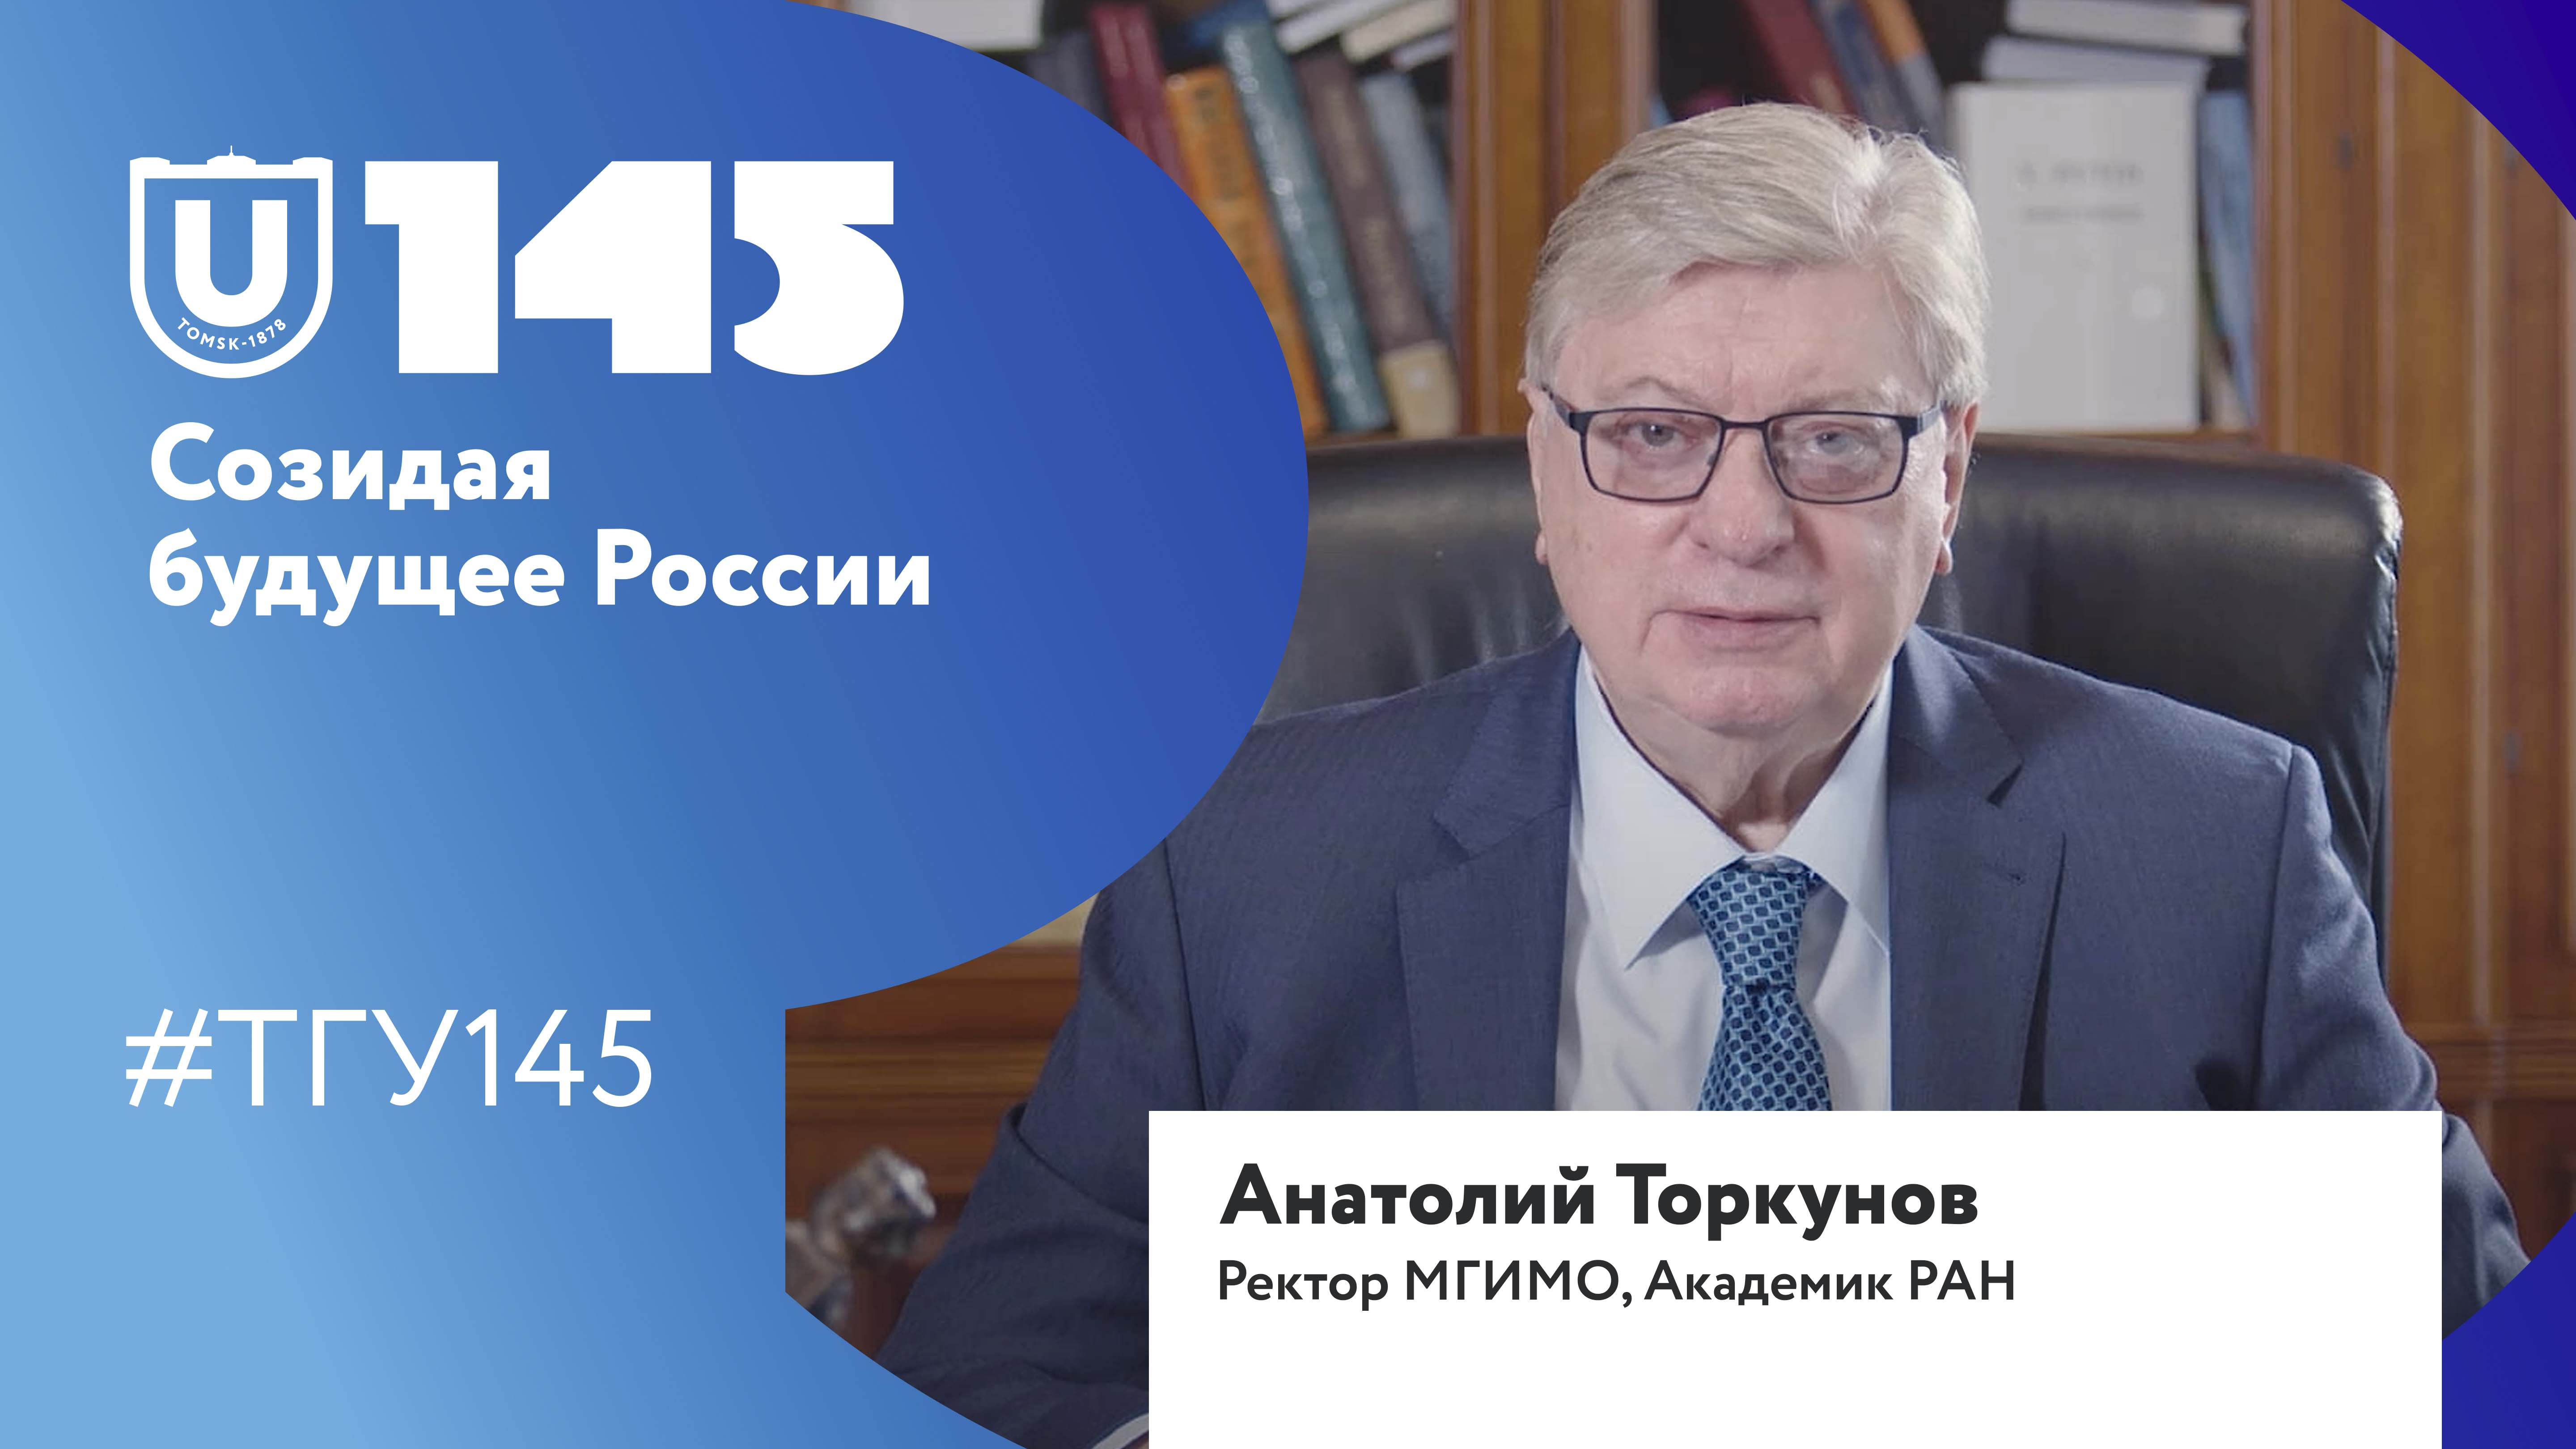 Анатолий Торкунов поздравляет ТГУ со 145-летием